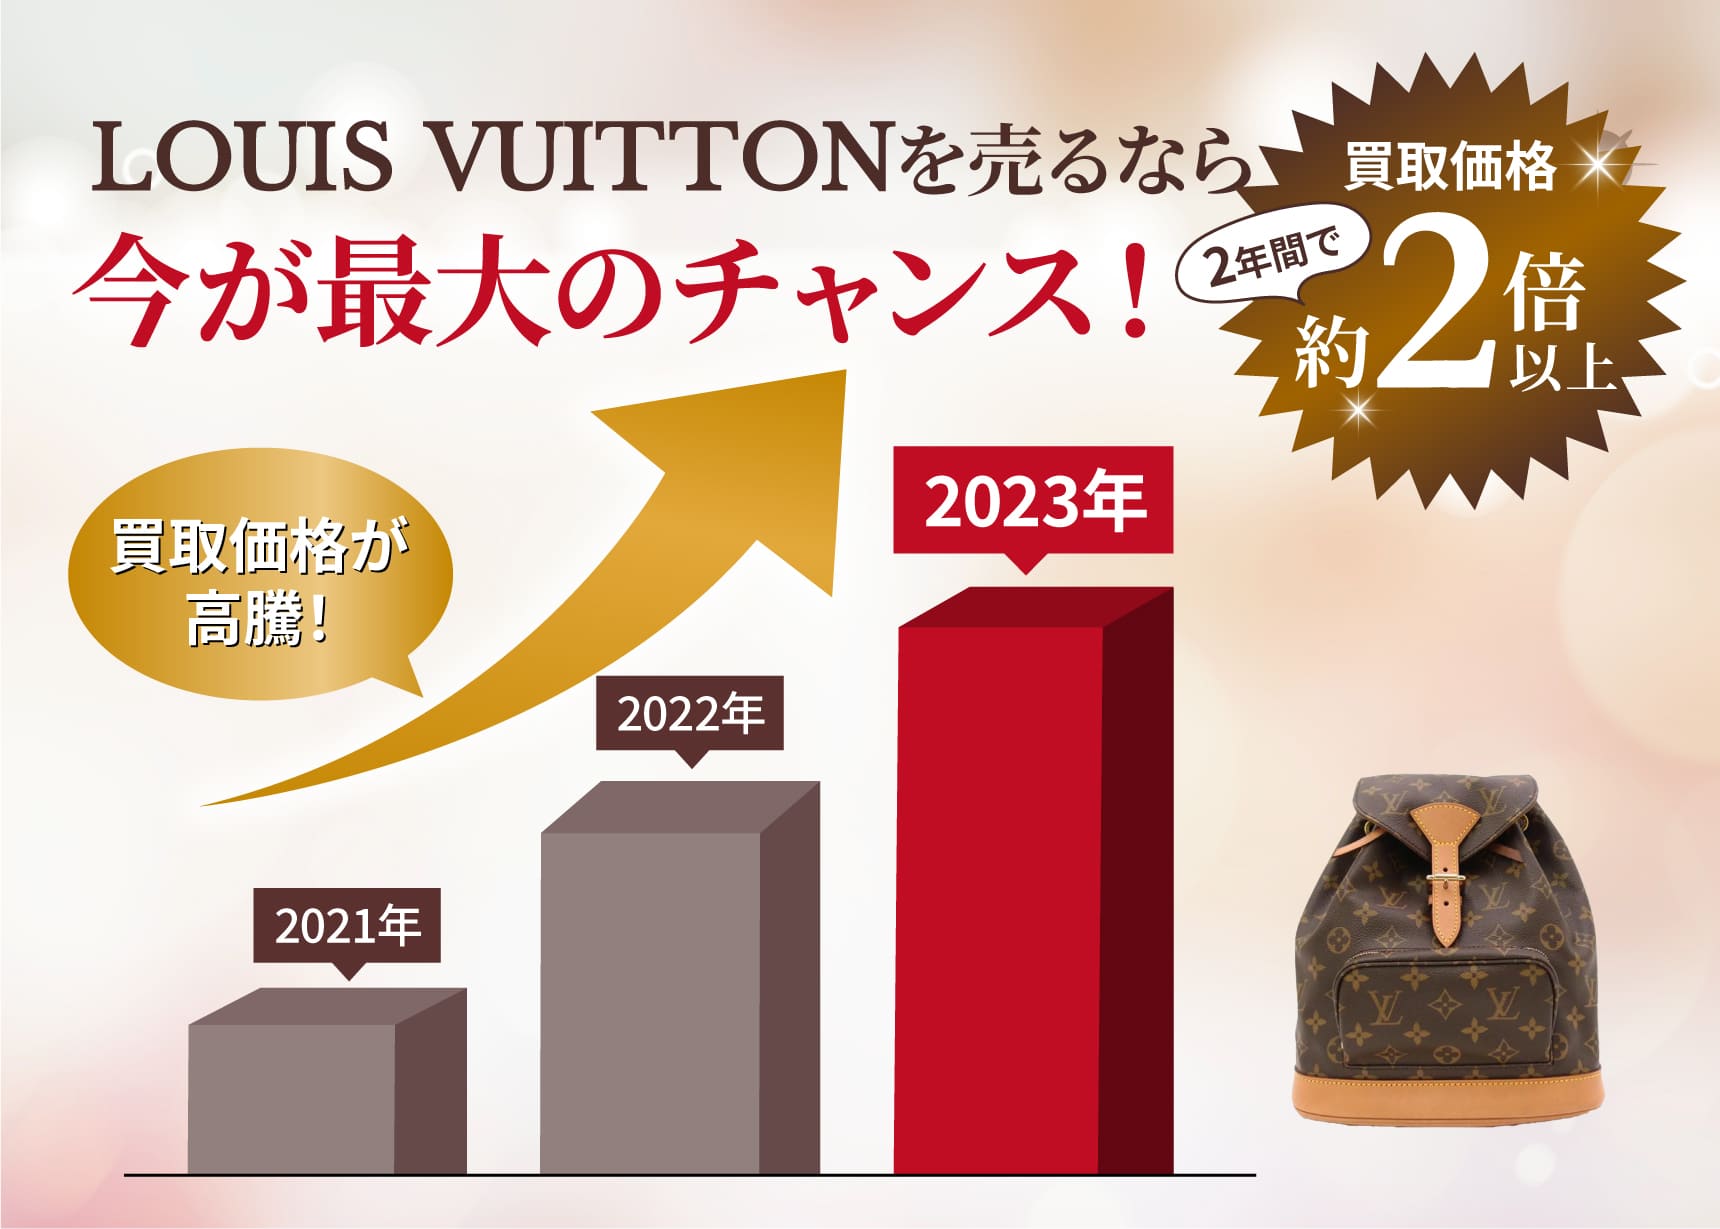 今こそ高値で売るチャンス！LOUIS VUITTON 買取価格 約2年間で買取価格約2倍以上！